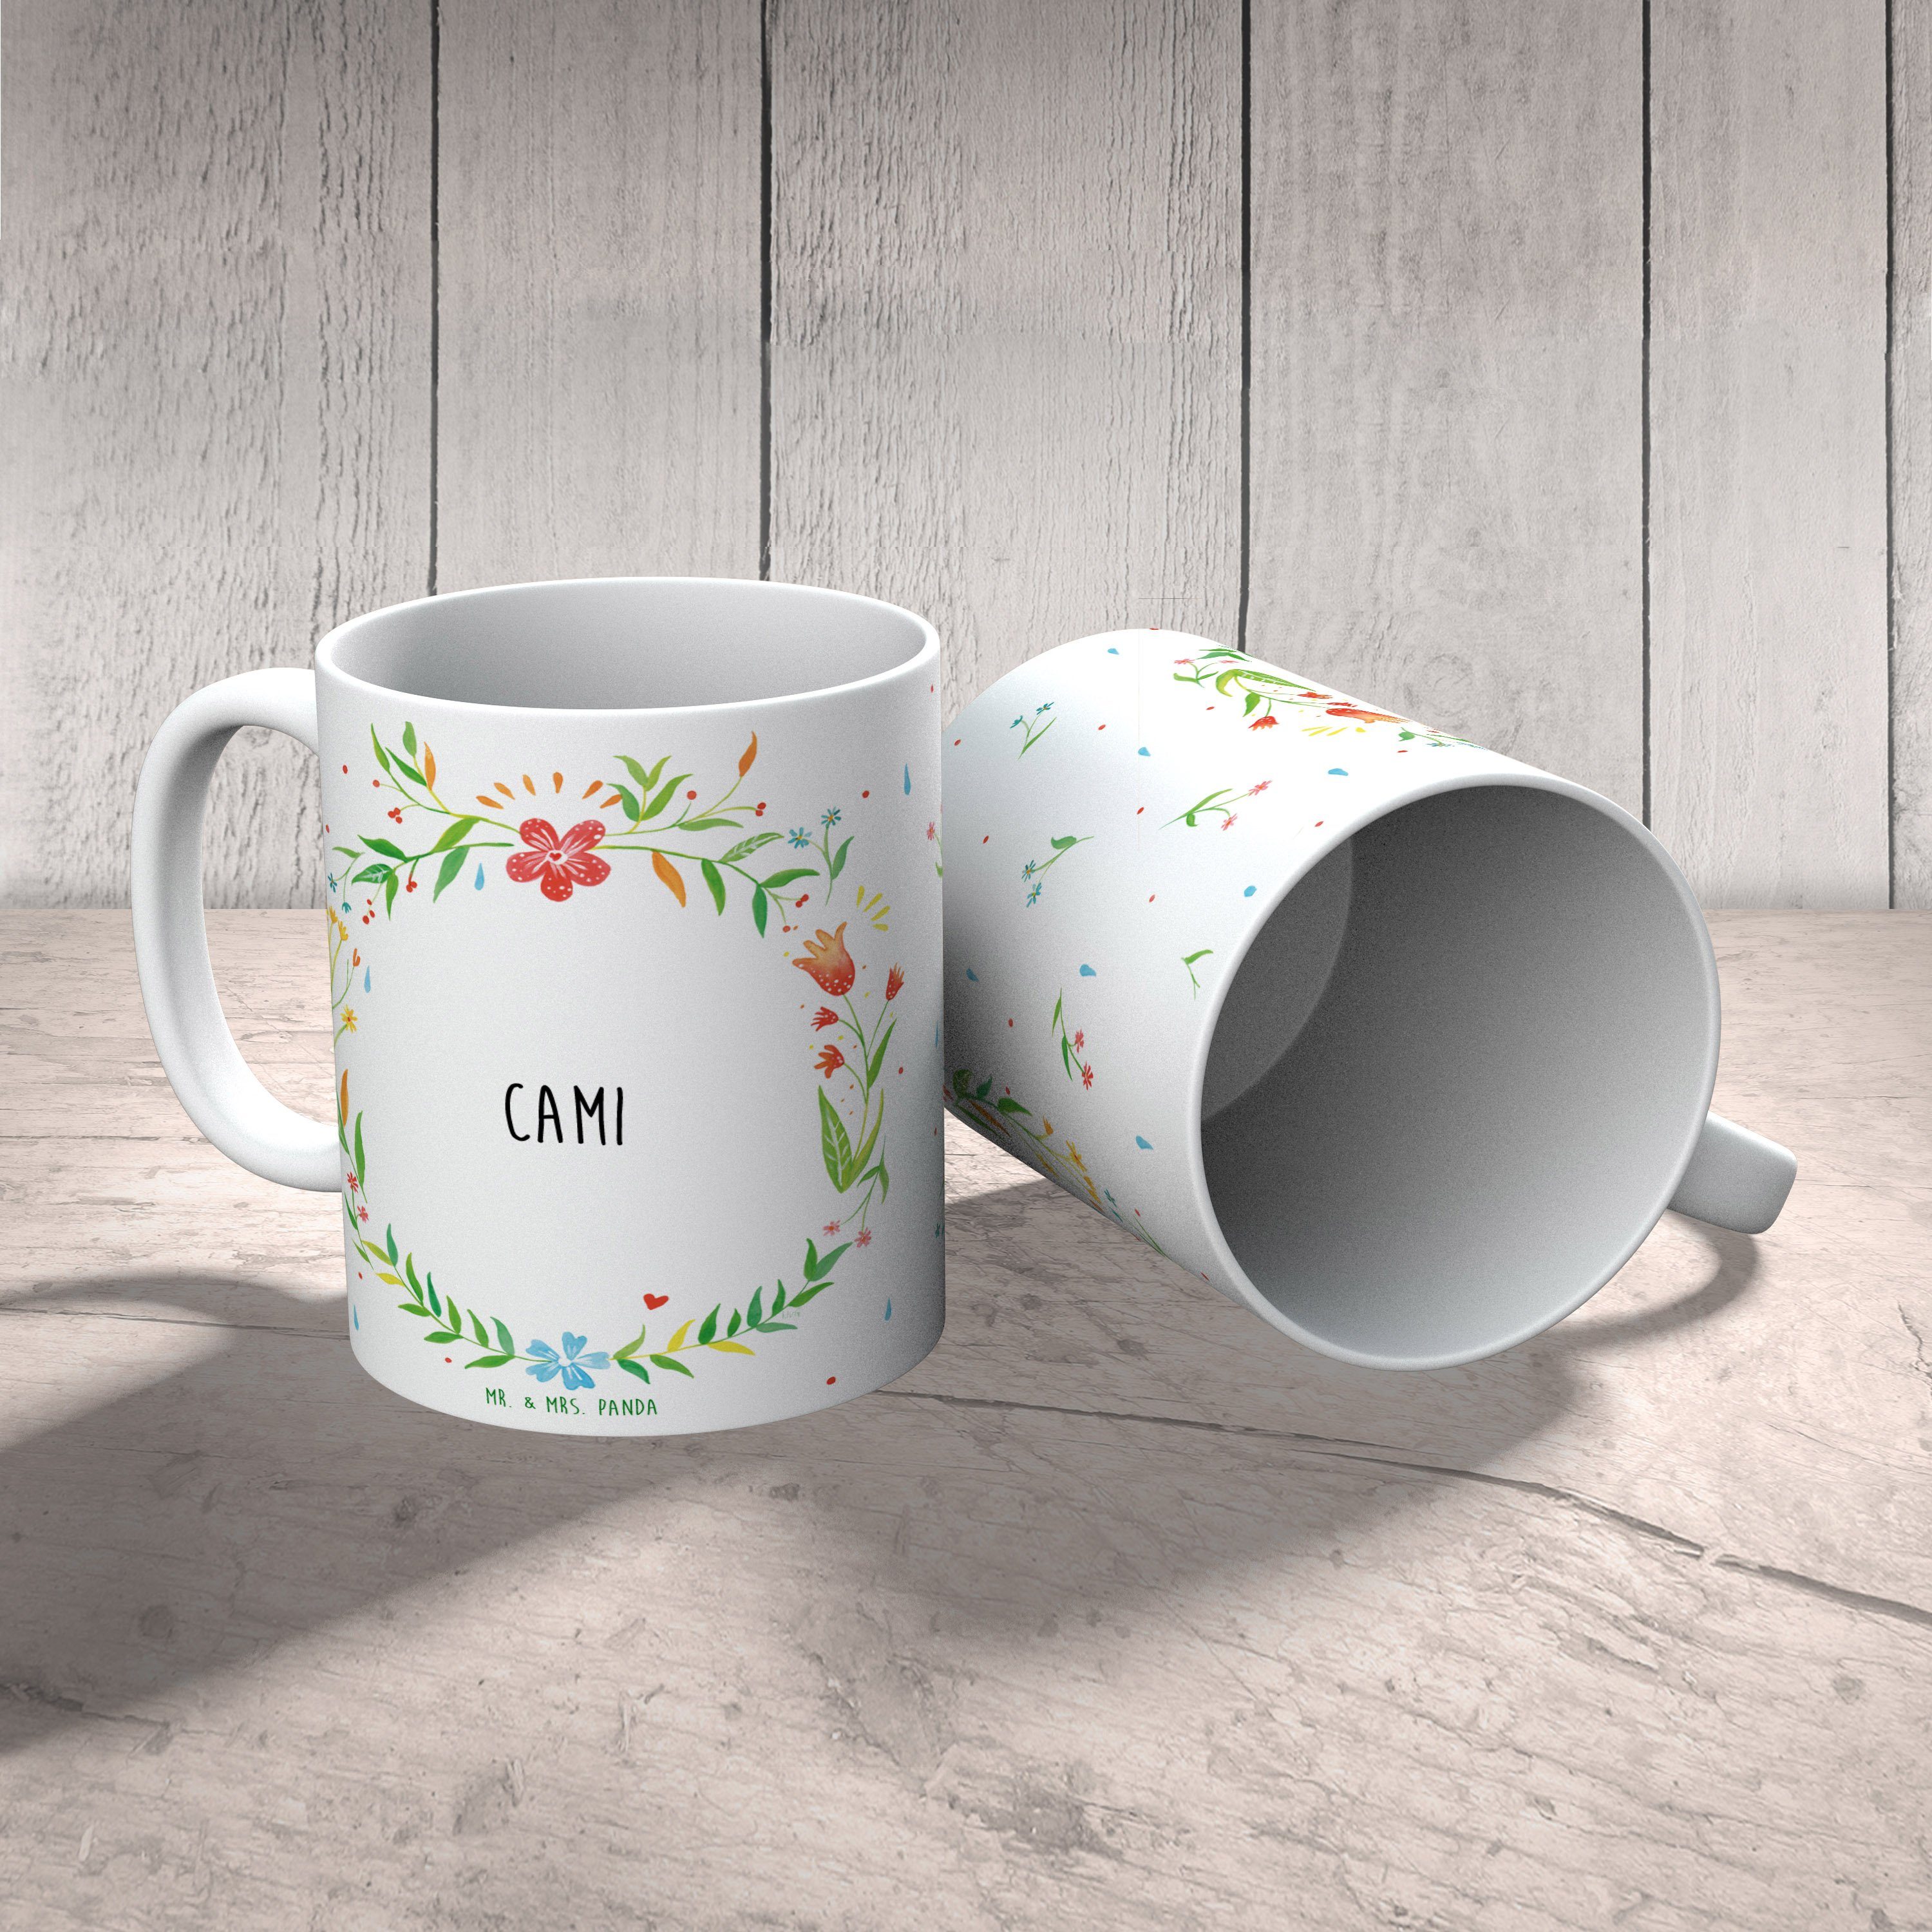 Kaffeebecher, Tasse Geschenk Tasse, Keramik Motive, Tasse B, Mrs. - Mr. Panda Tasse, Geschenk, & Cami